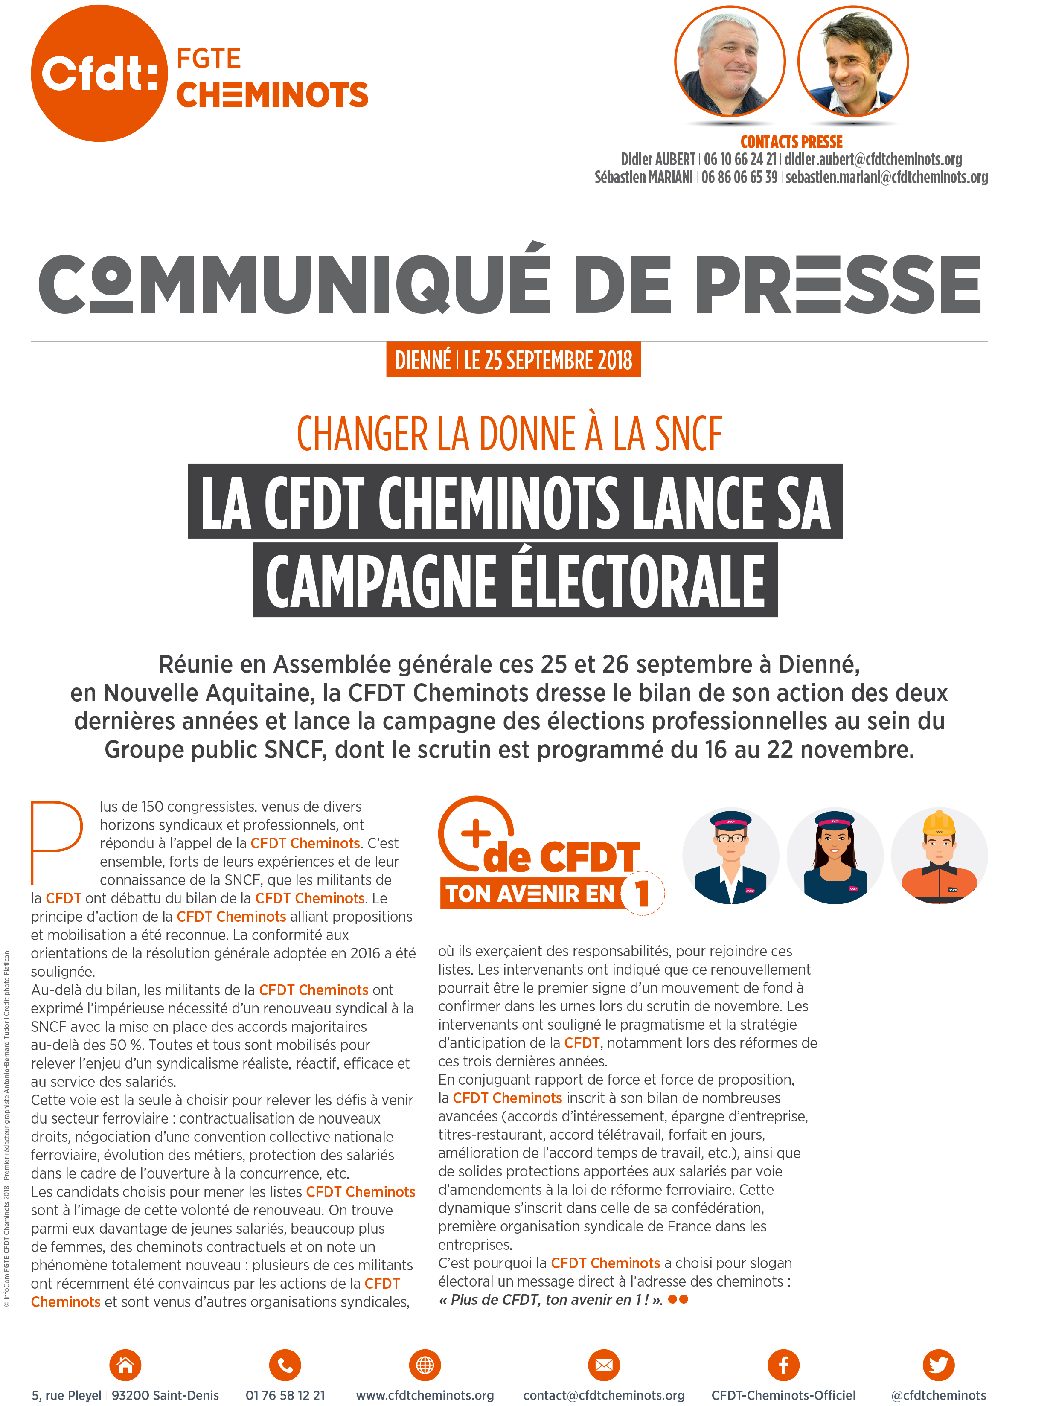 La CFDT Cheminots lance sa campagne électorale